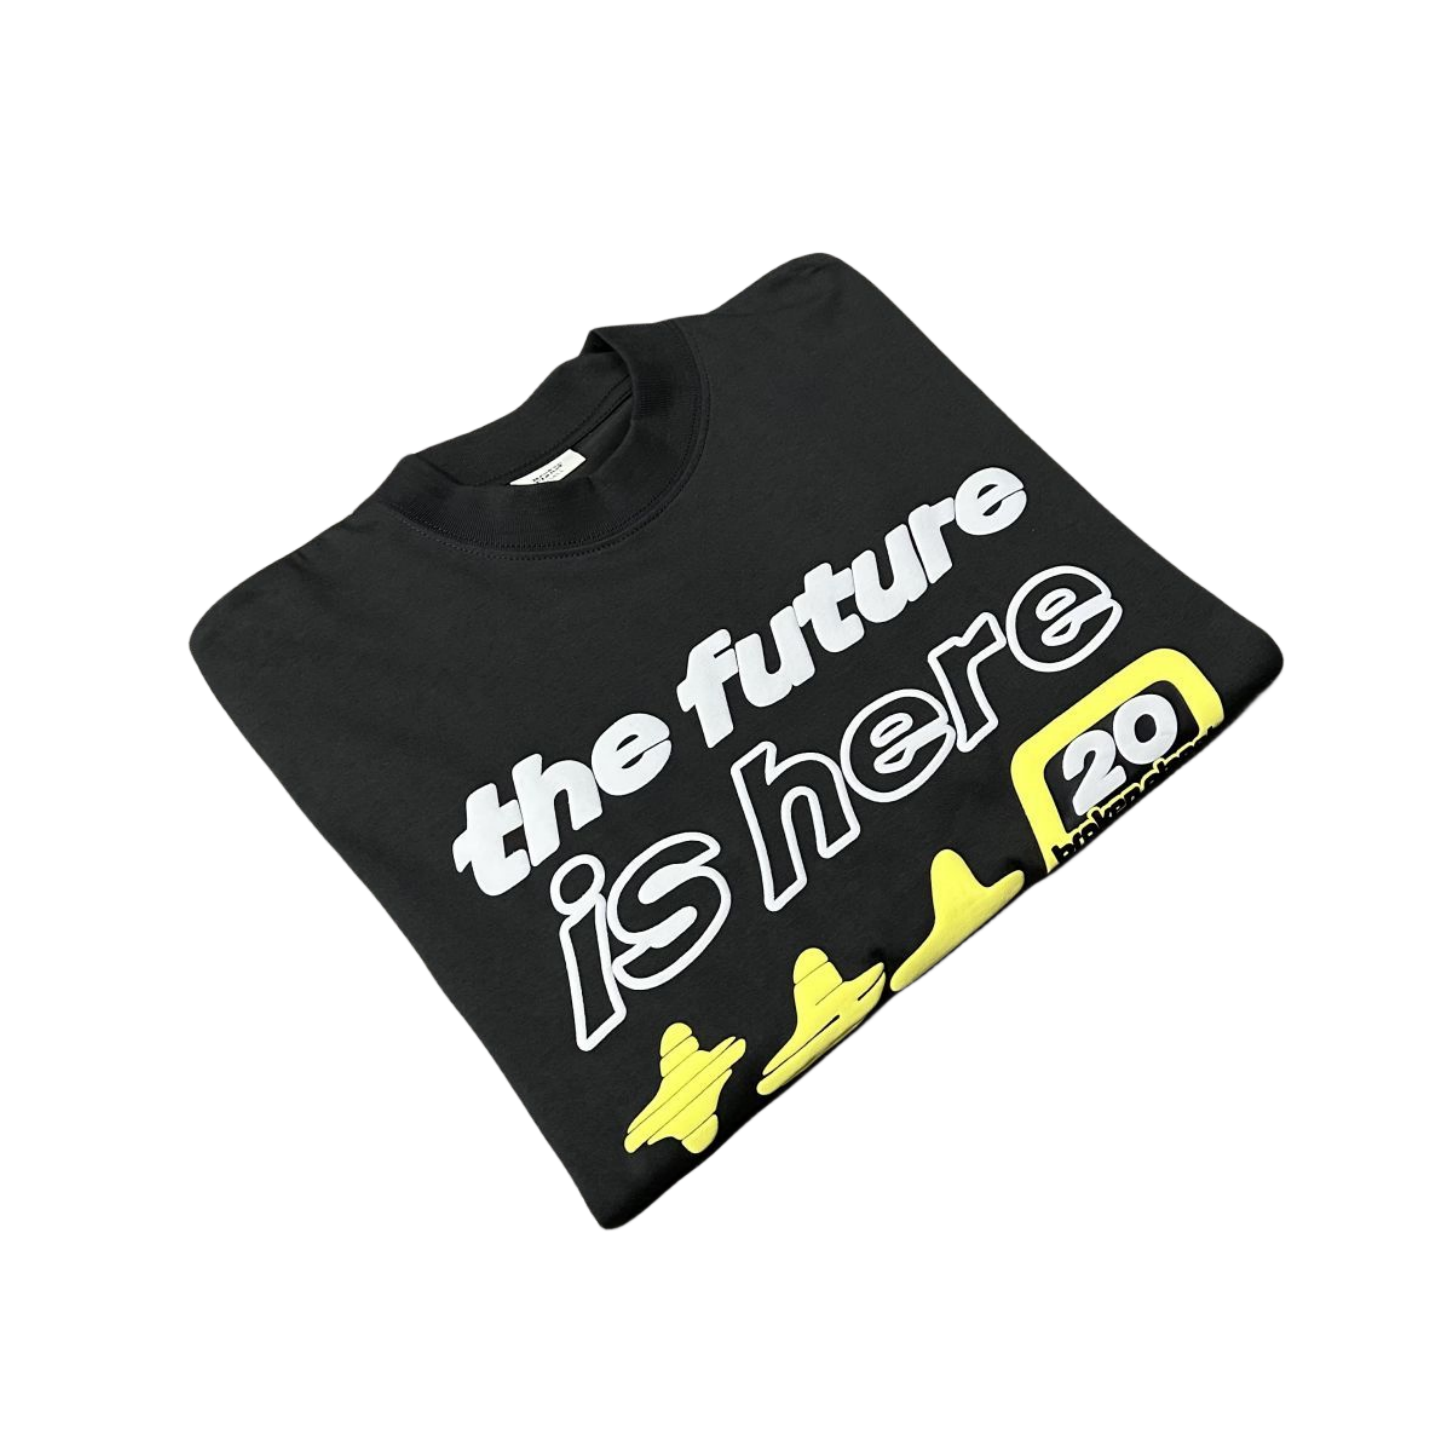 Planète Brisée «l'avenir est ici» T-shirt Streetwear décontracté à manches courtes pour hommes et femmes